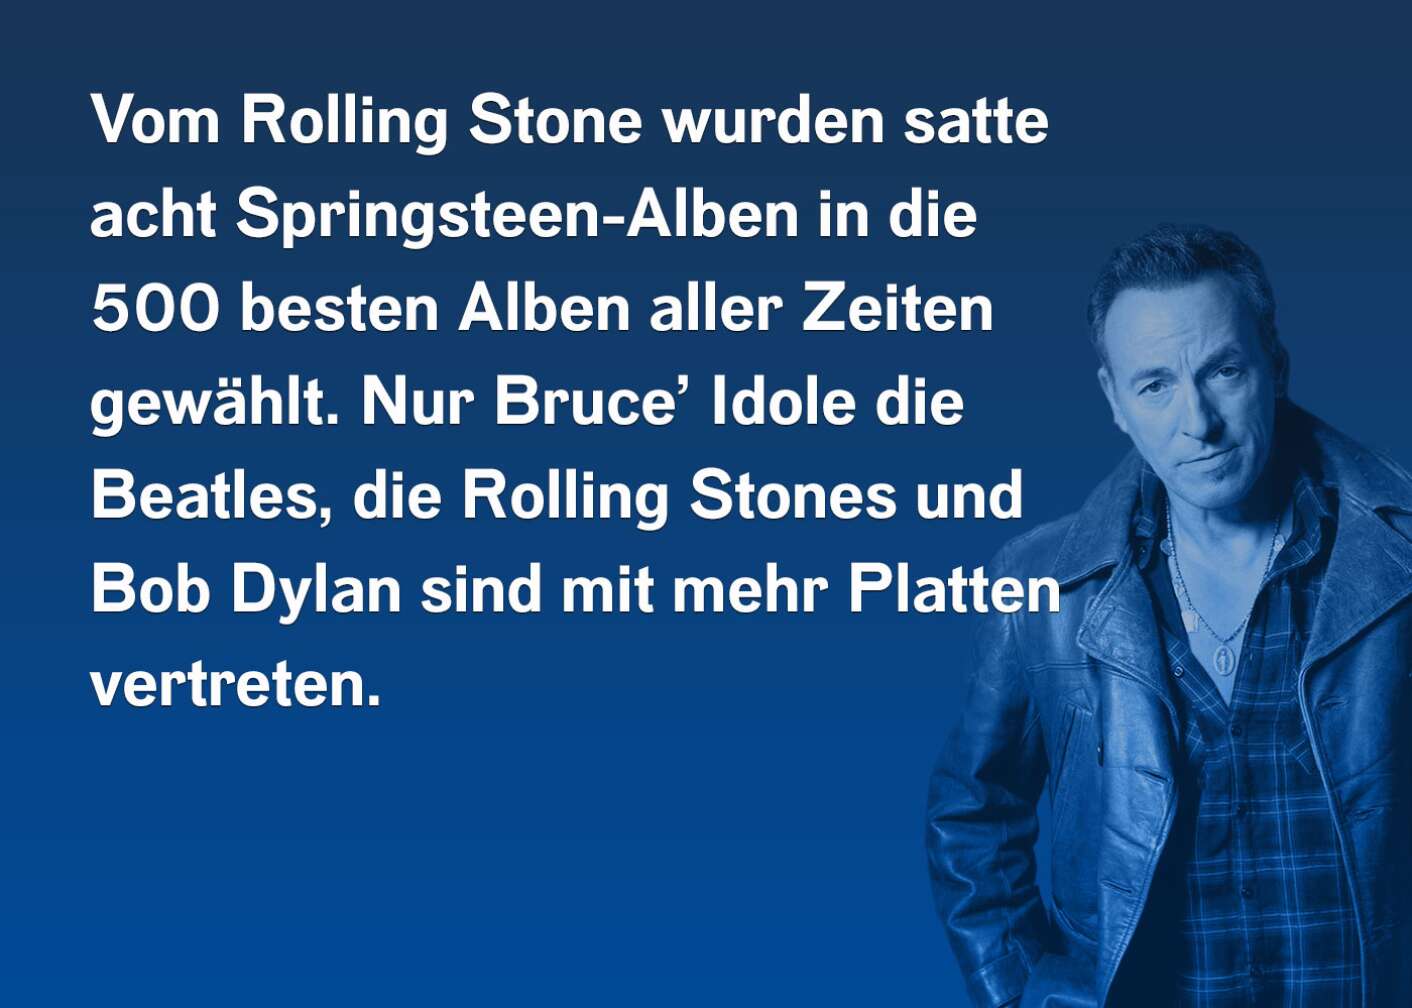 Vom Rolling Stone wurden satte acht Springsteen-Alben in die 500 besten Alben aller Zeiten gewählt. Nur Bruce' Idole die Beatles, die Rolling Stones und Bob Dylan sind mit mehr Platten vertreten.